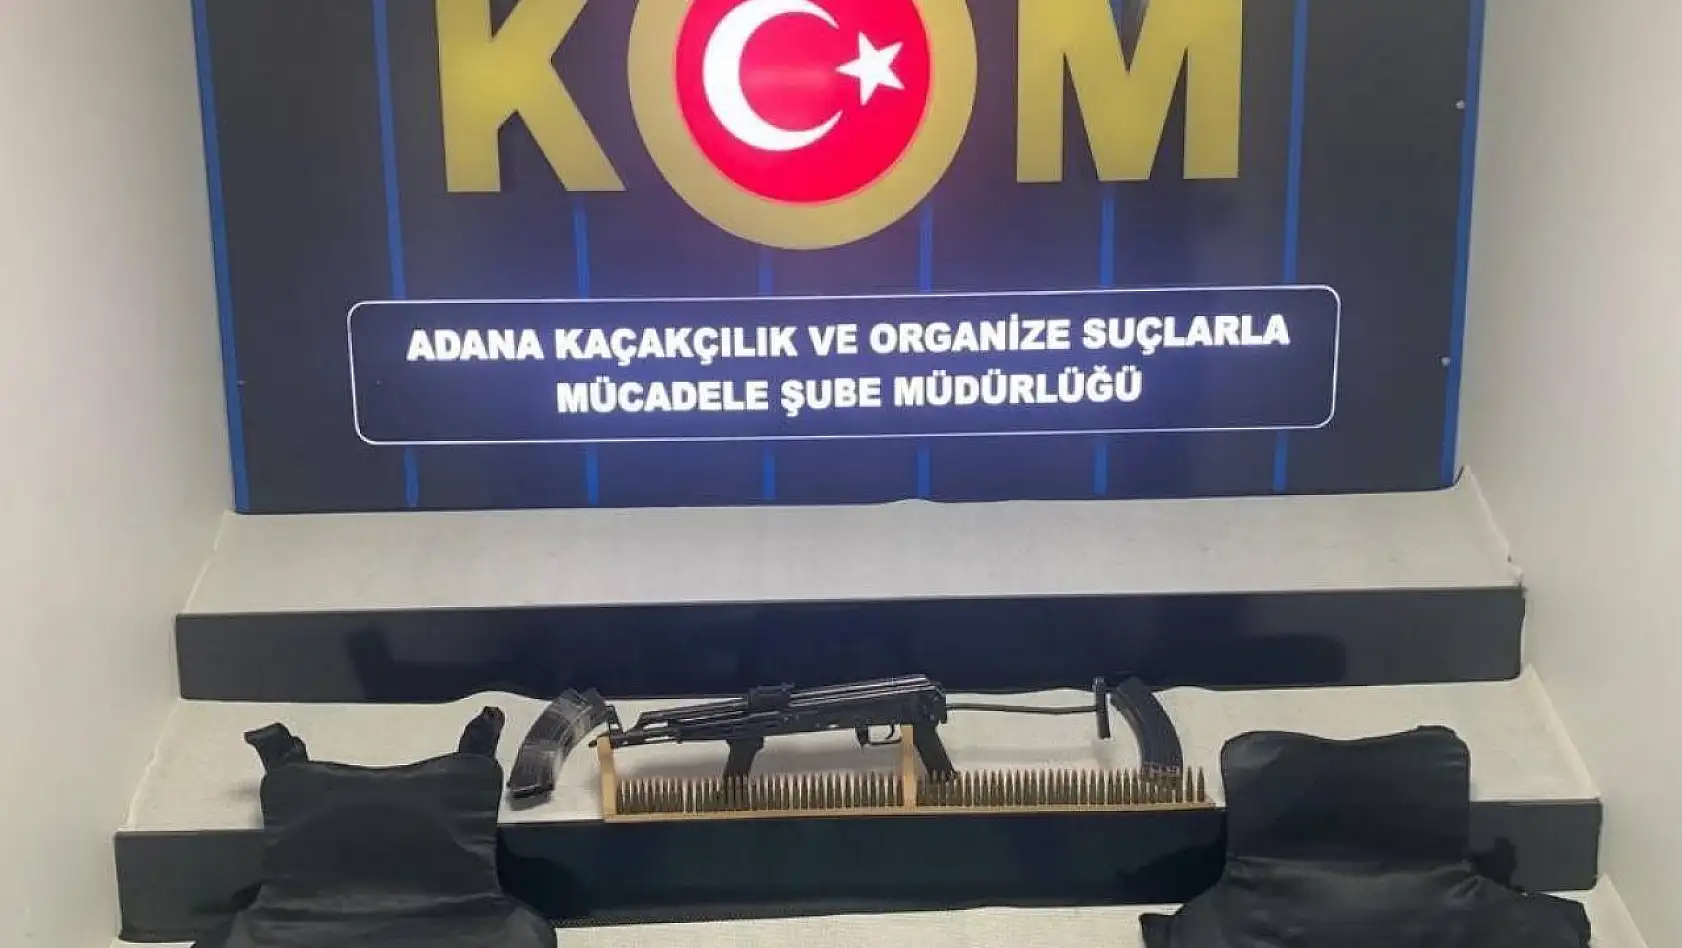 Adana'da polis evde uzun namlulu silah ve çelik yelek ele geçirdi